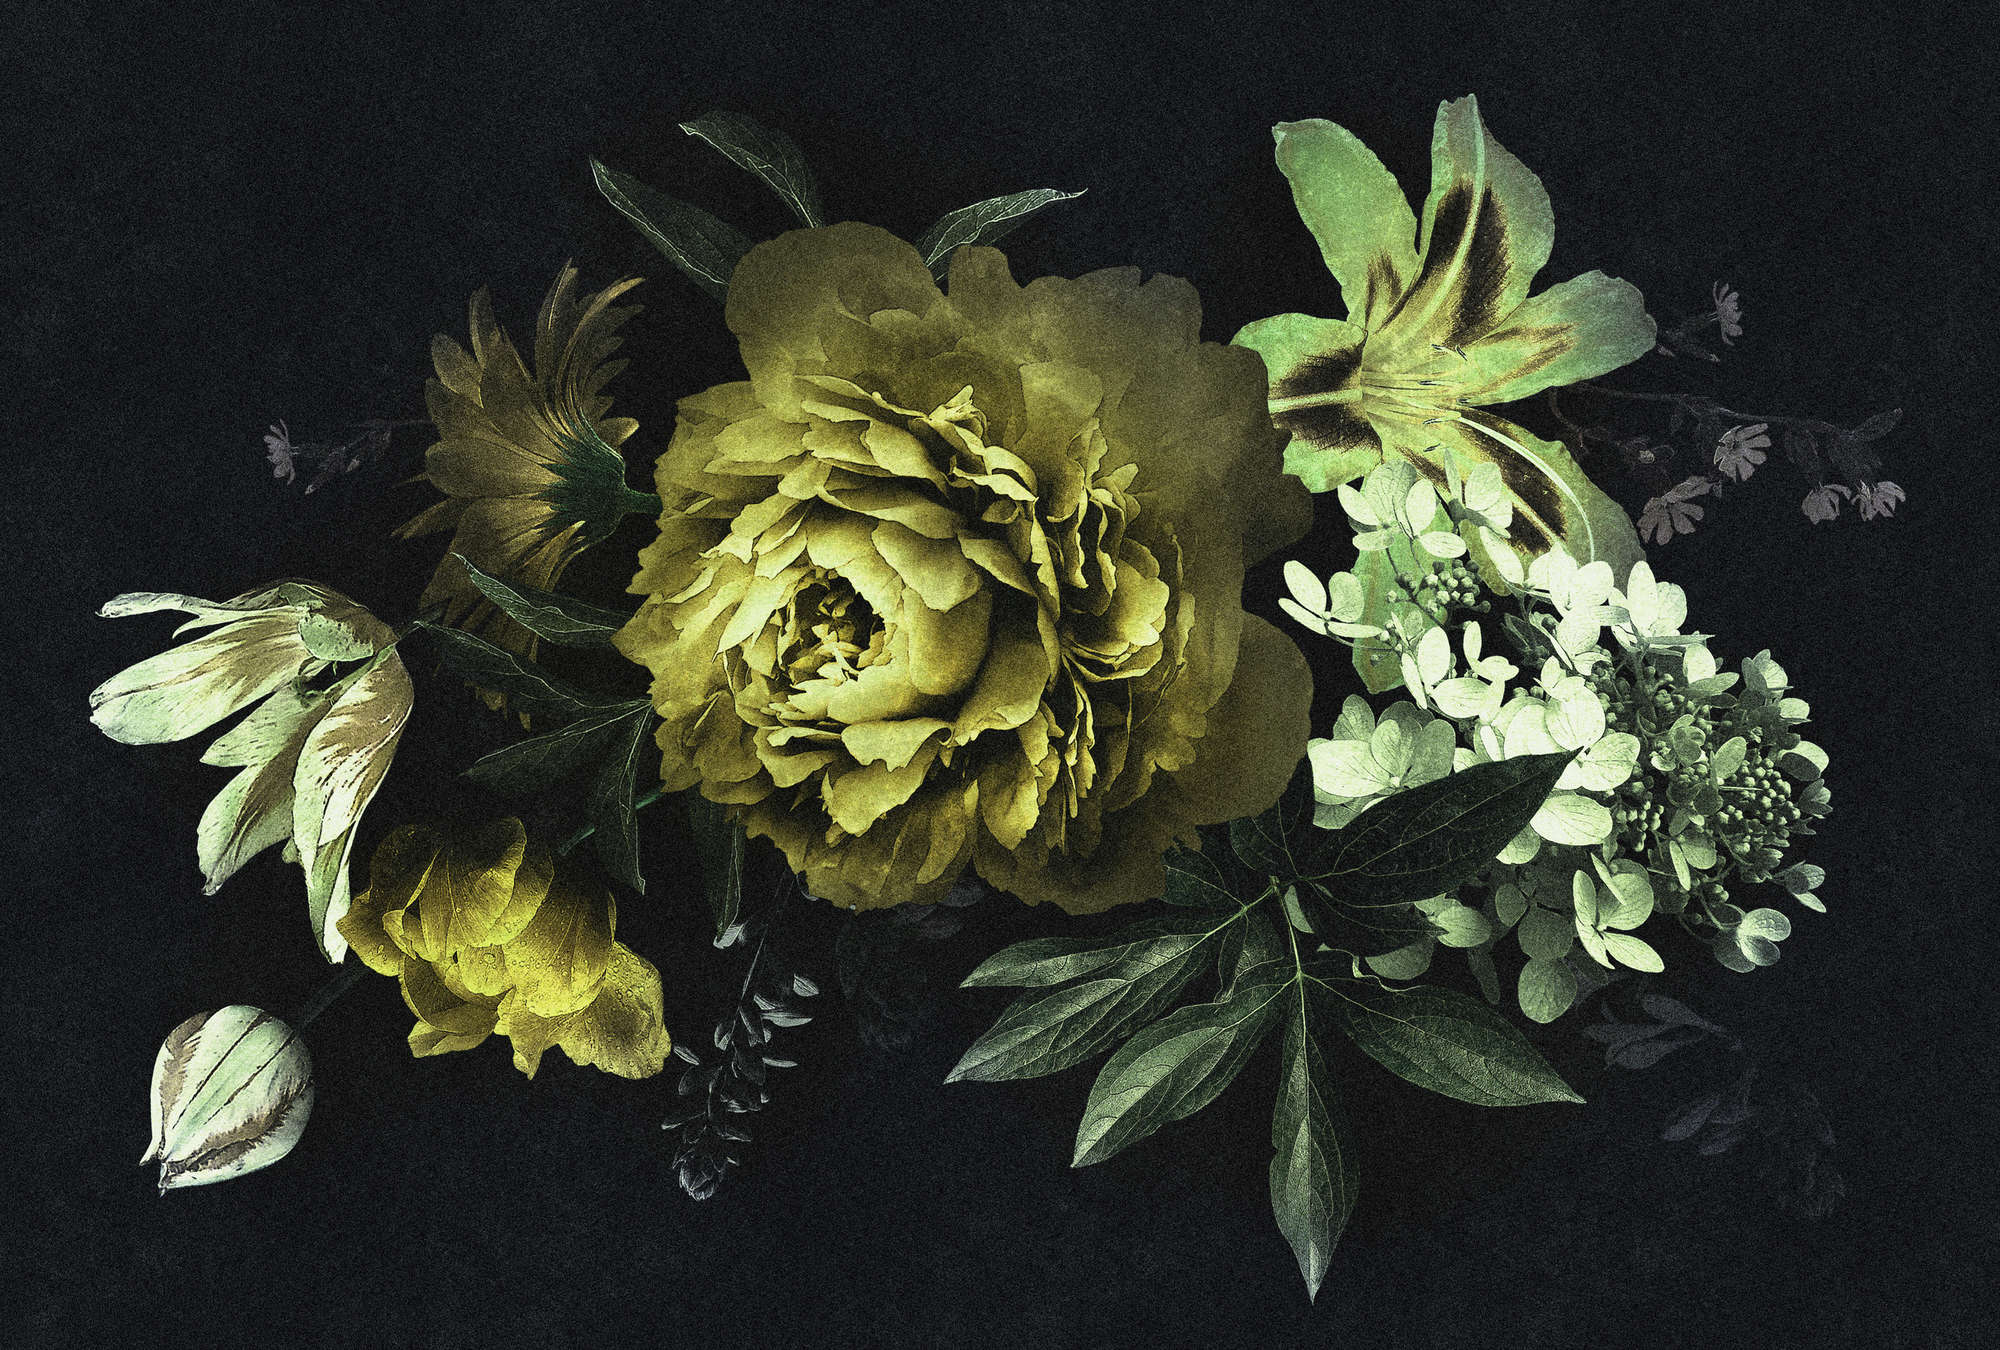             Drama queen 2 - Carta da parati con bouquet di fiori in cartoncino verde, giallo, nero e perla.
        